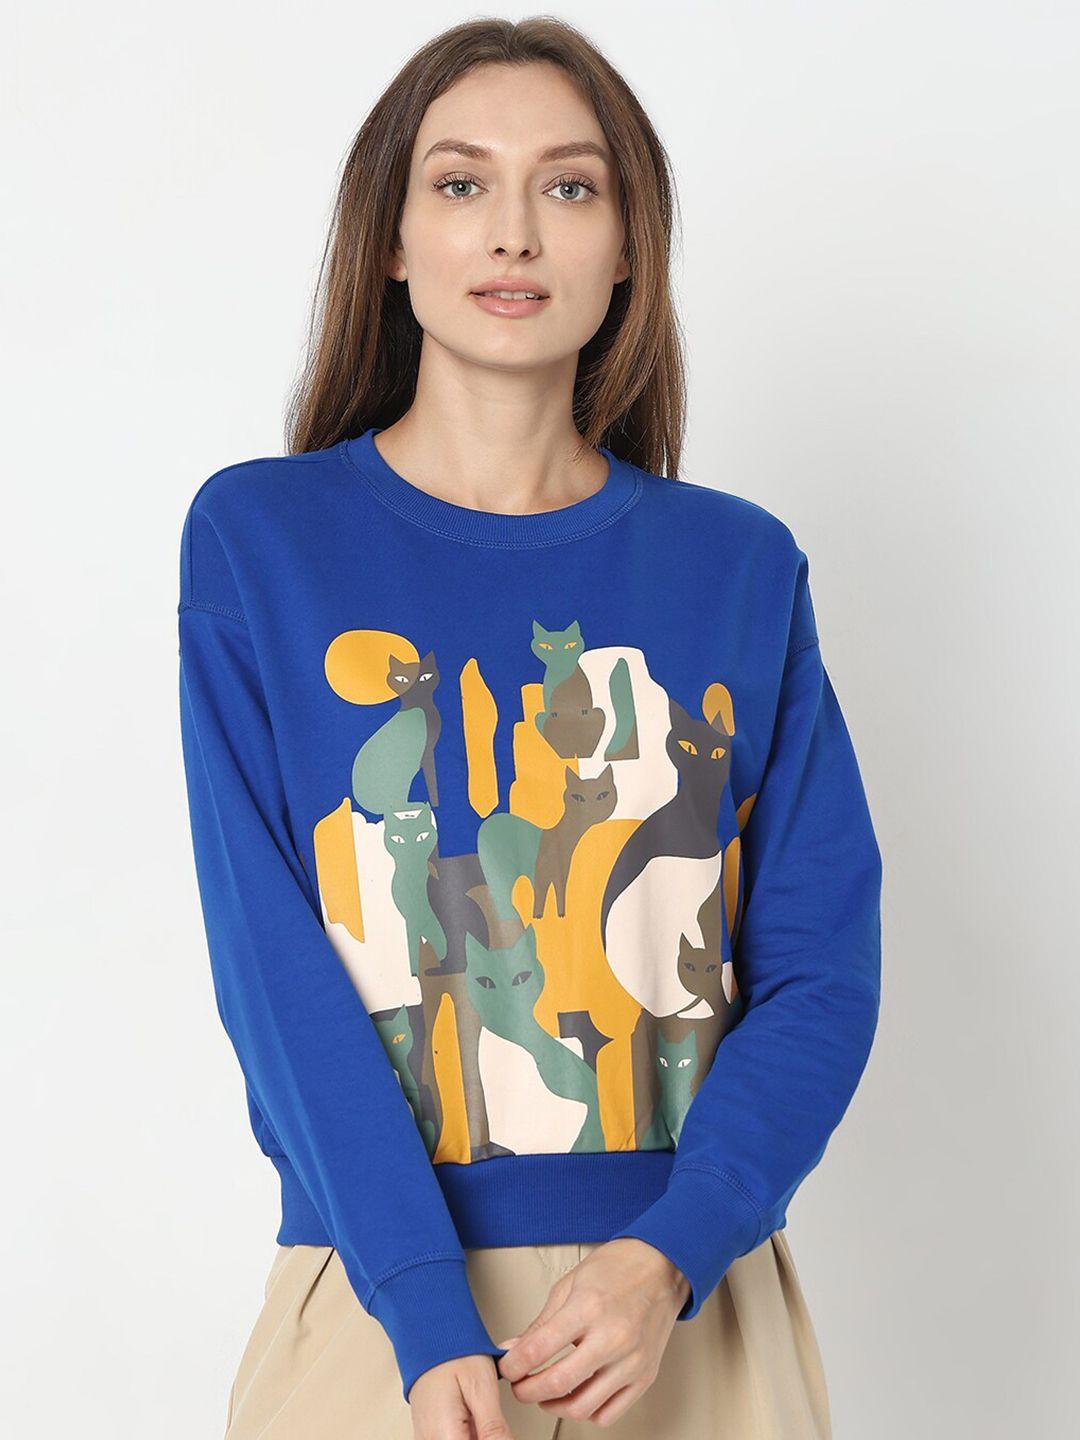 vero moda graphic printed pure cotton pullover sweatshirt